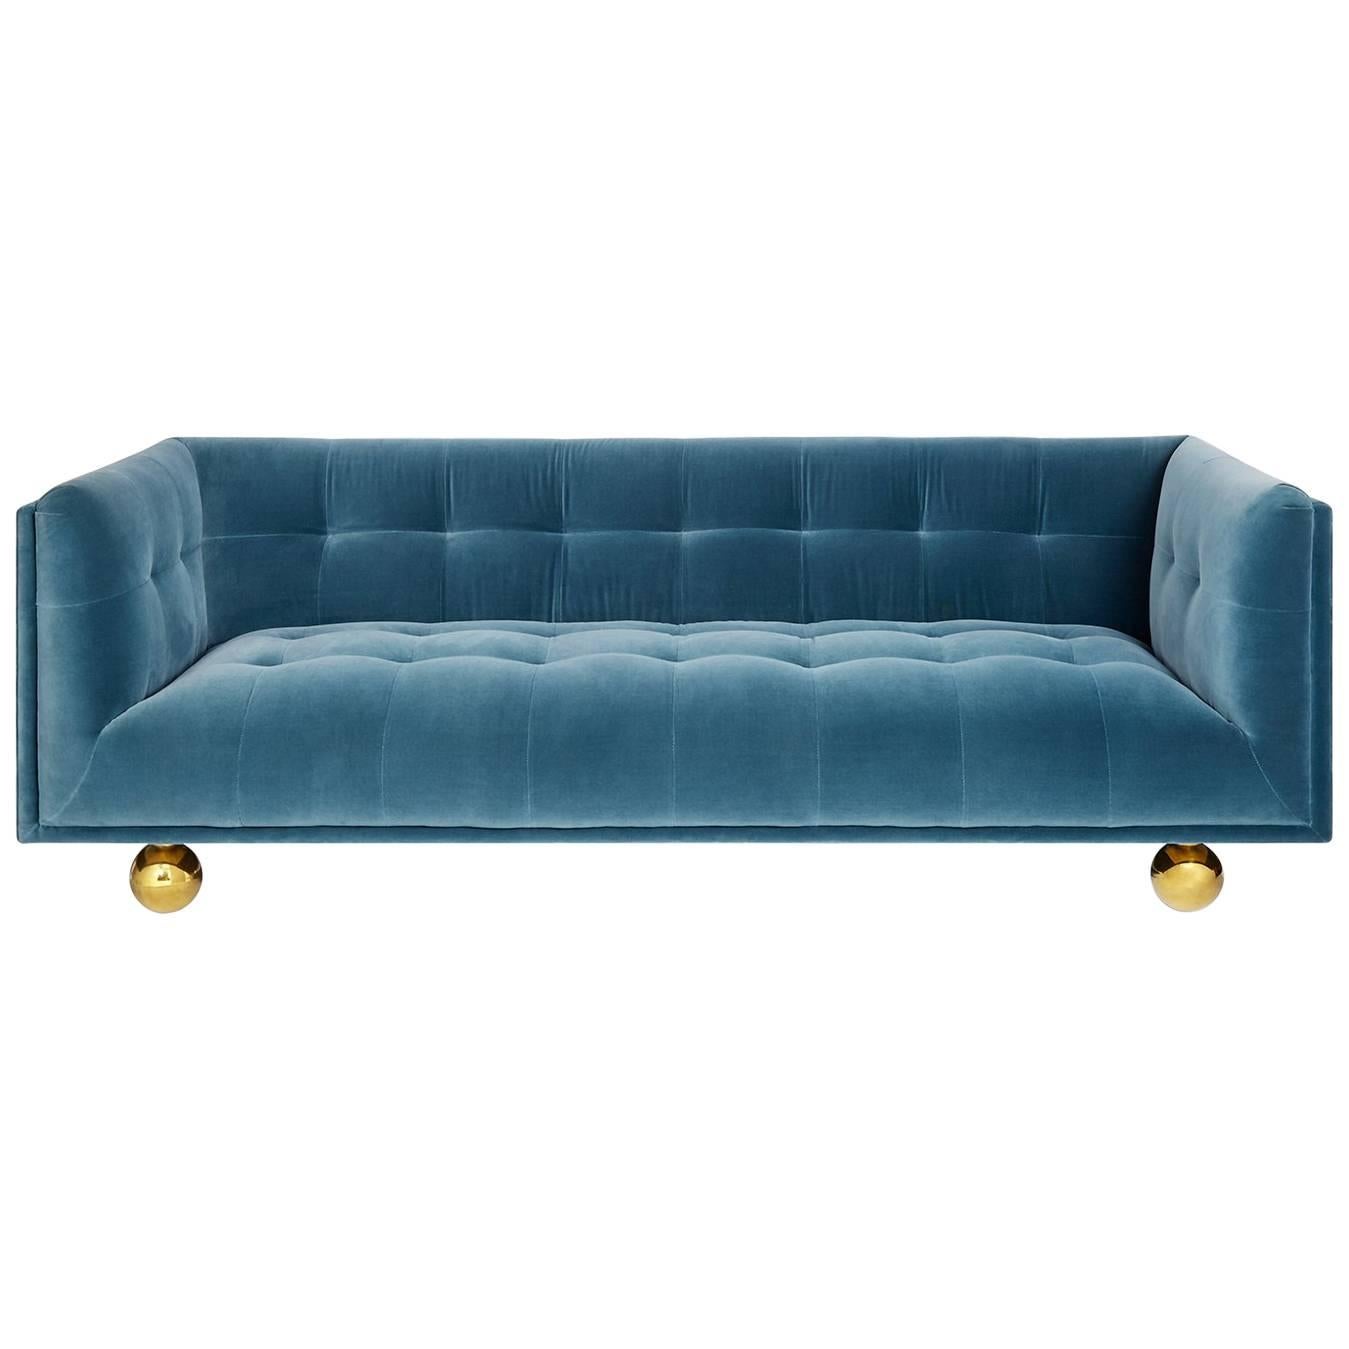 Claridge Modern Chesterfield Sofa in French Blue Velvet